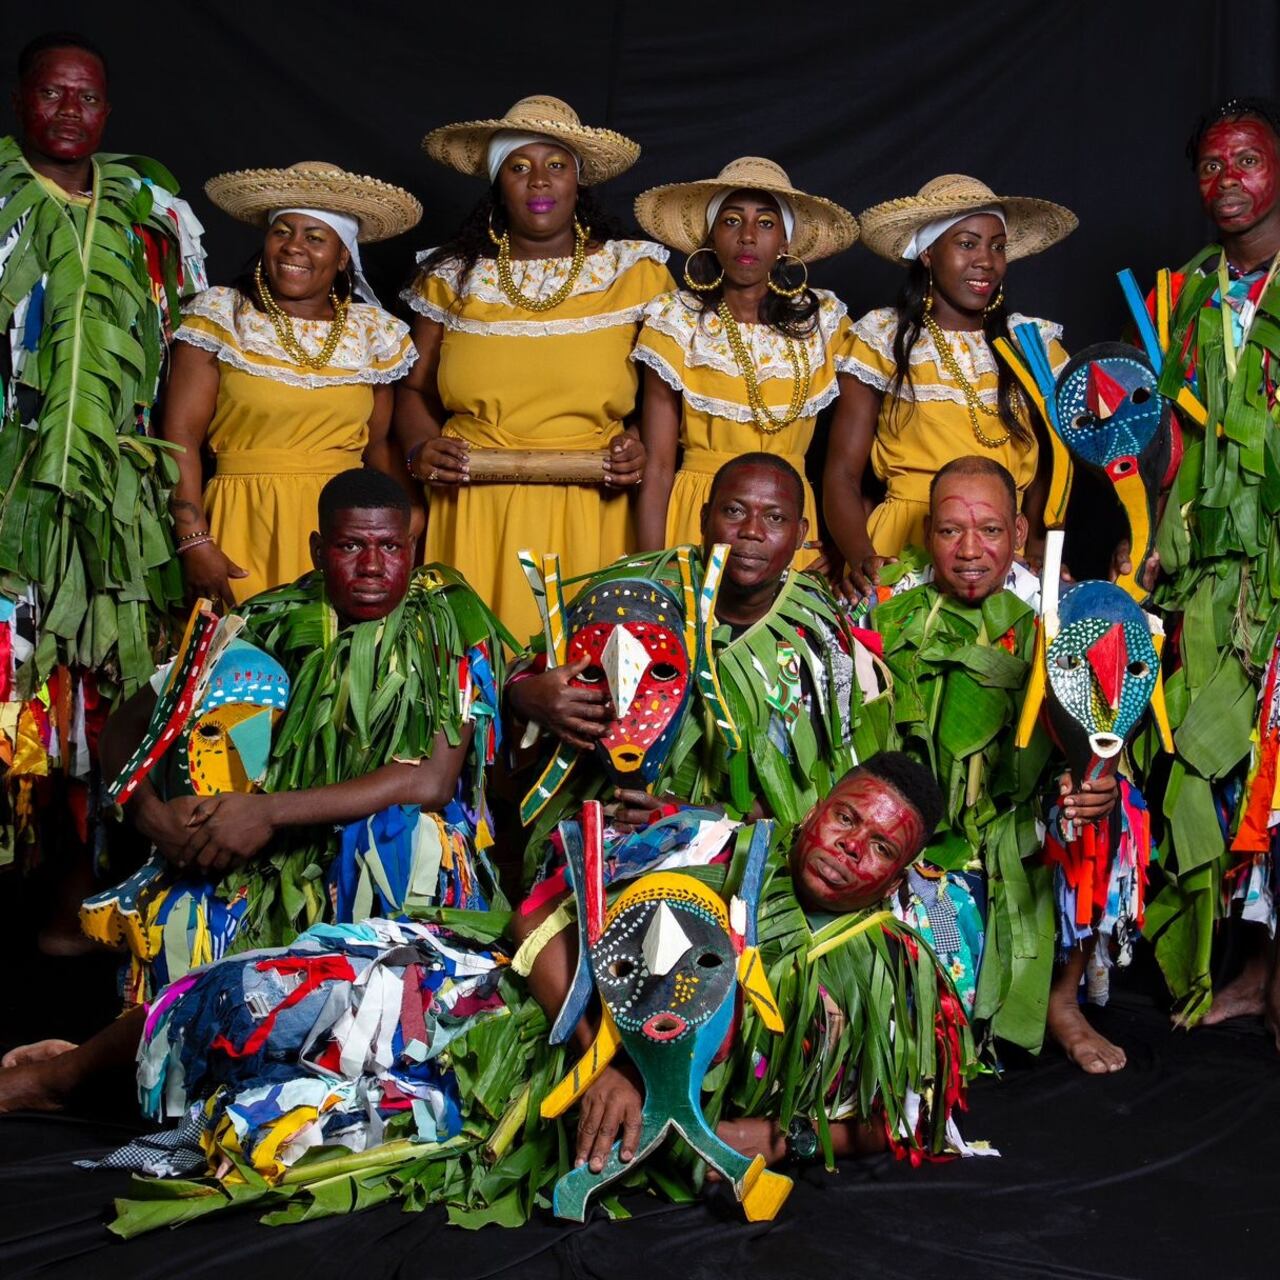 El Grupo de Música Folclórica Matachindé de Yurumanguí, busca preservar la identidad cultural y artística para las futuras generaciones, a través de la puesta en escena de la riqueza afrocolombiana.